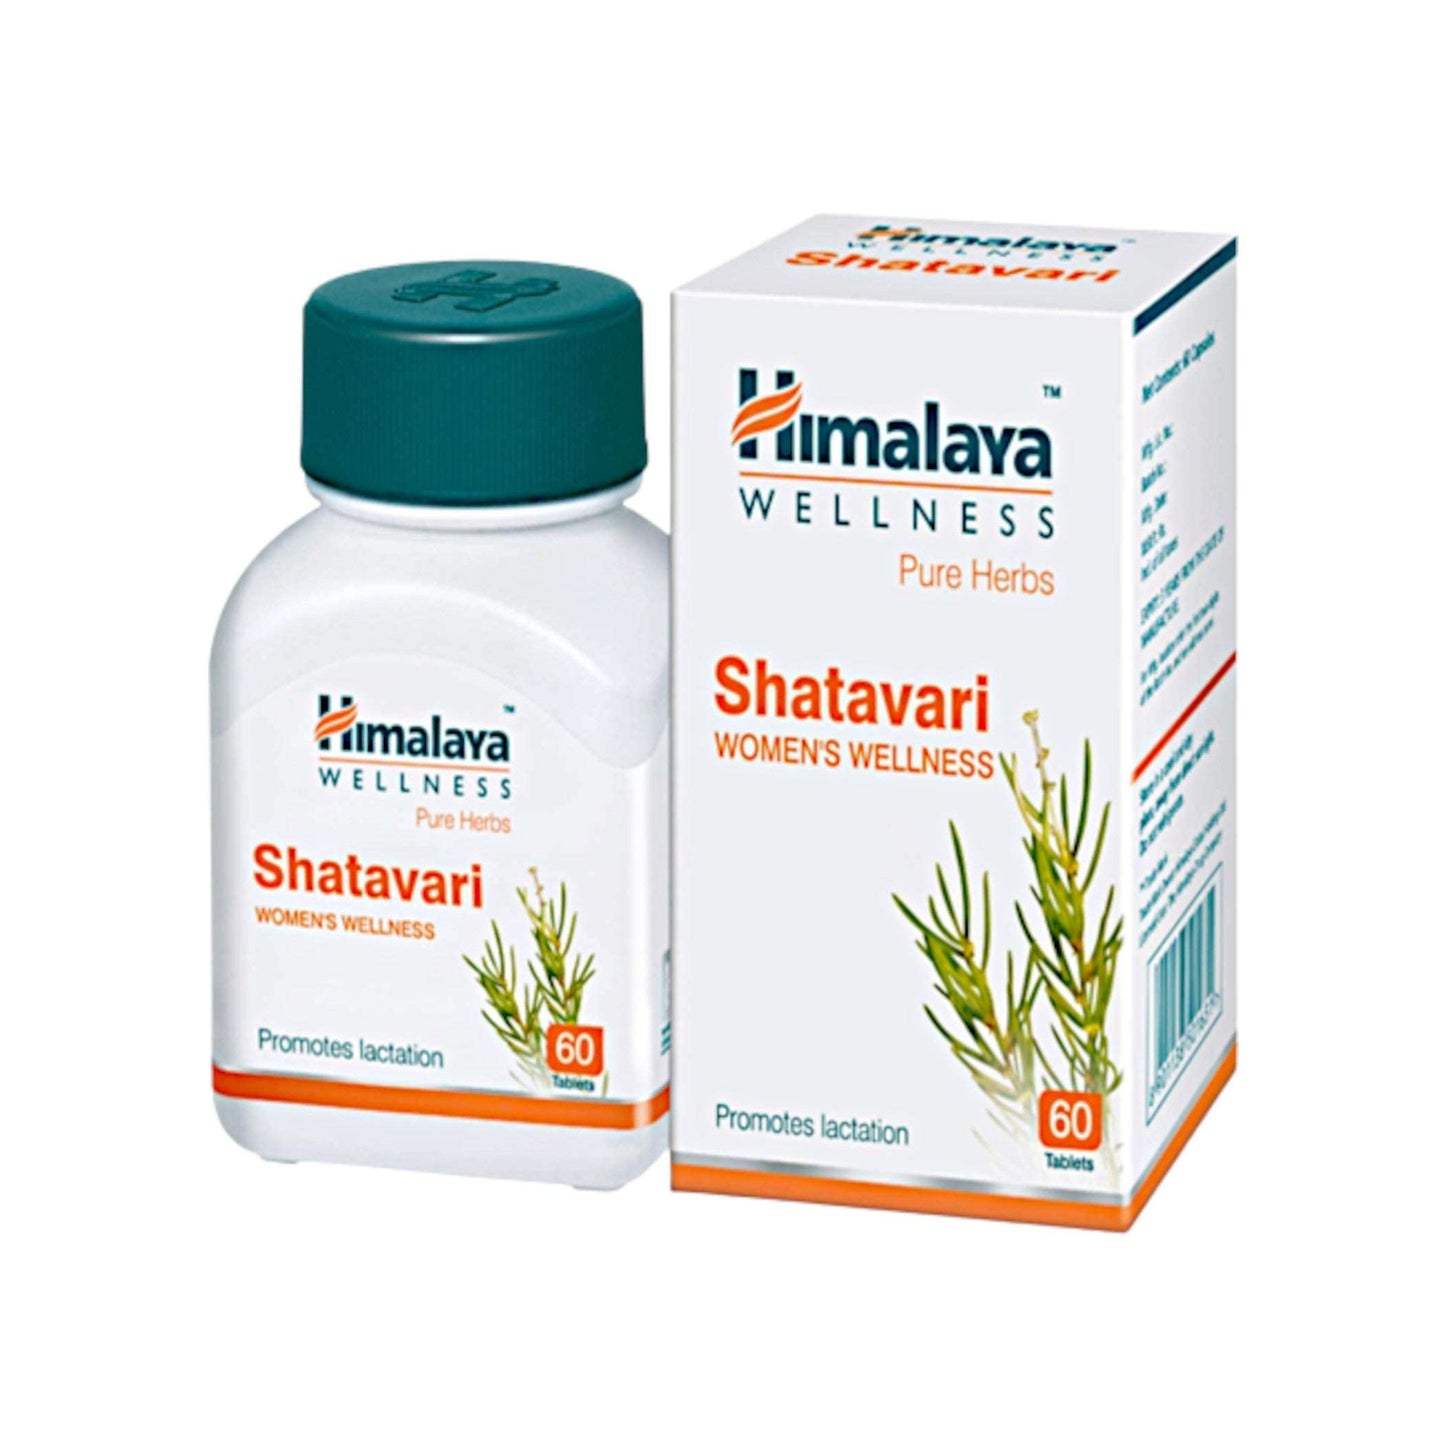 Image: Himalaya Shatavari 60 Tablets - For women's hormonal balance, vitality, and well-being.